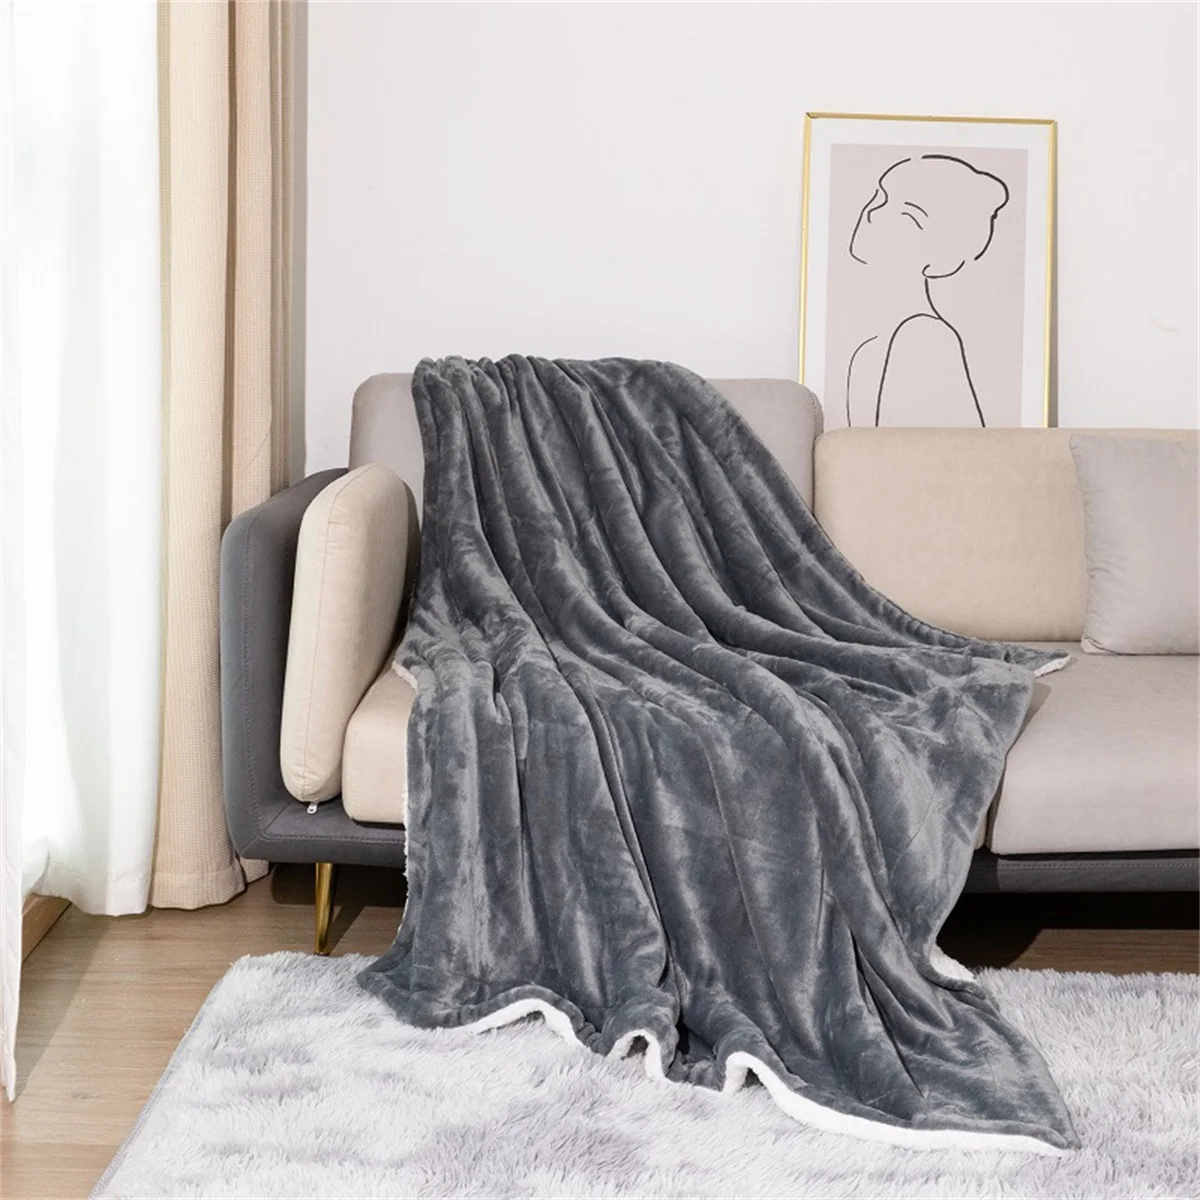 

Зимние теплые одеяла для кровати 130 х160 см, зимний норковый плед, однотонное покрывало для дивана, покрывало, мягкие клетчатые одеяла, зимнее ...